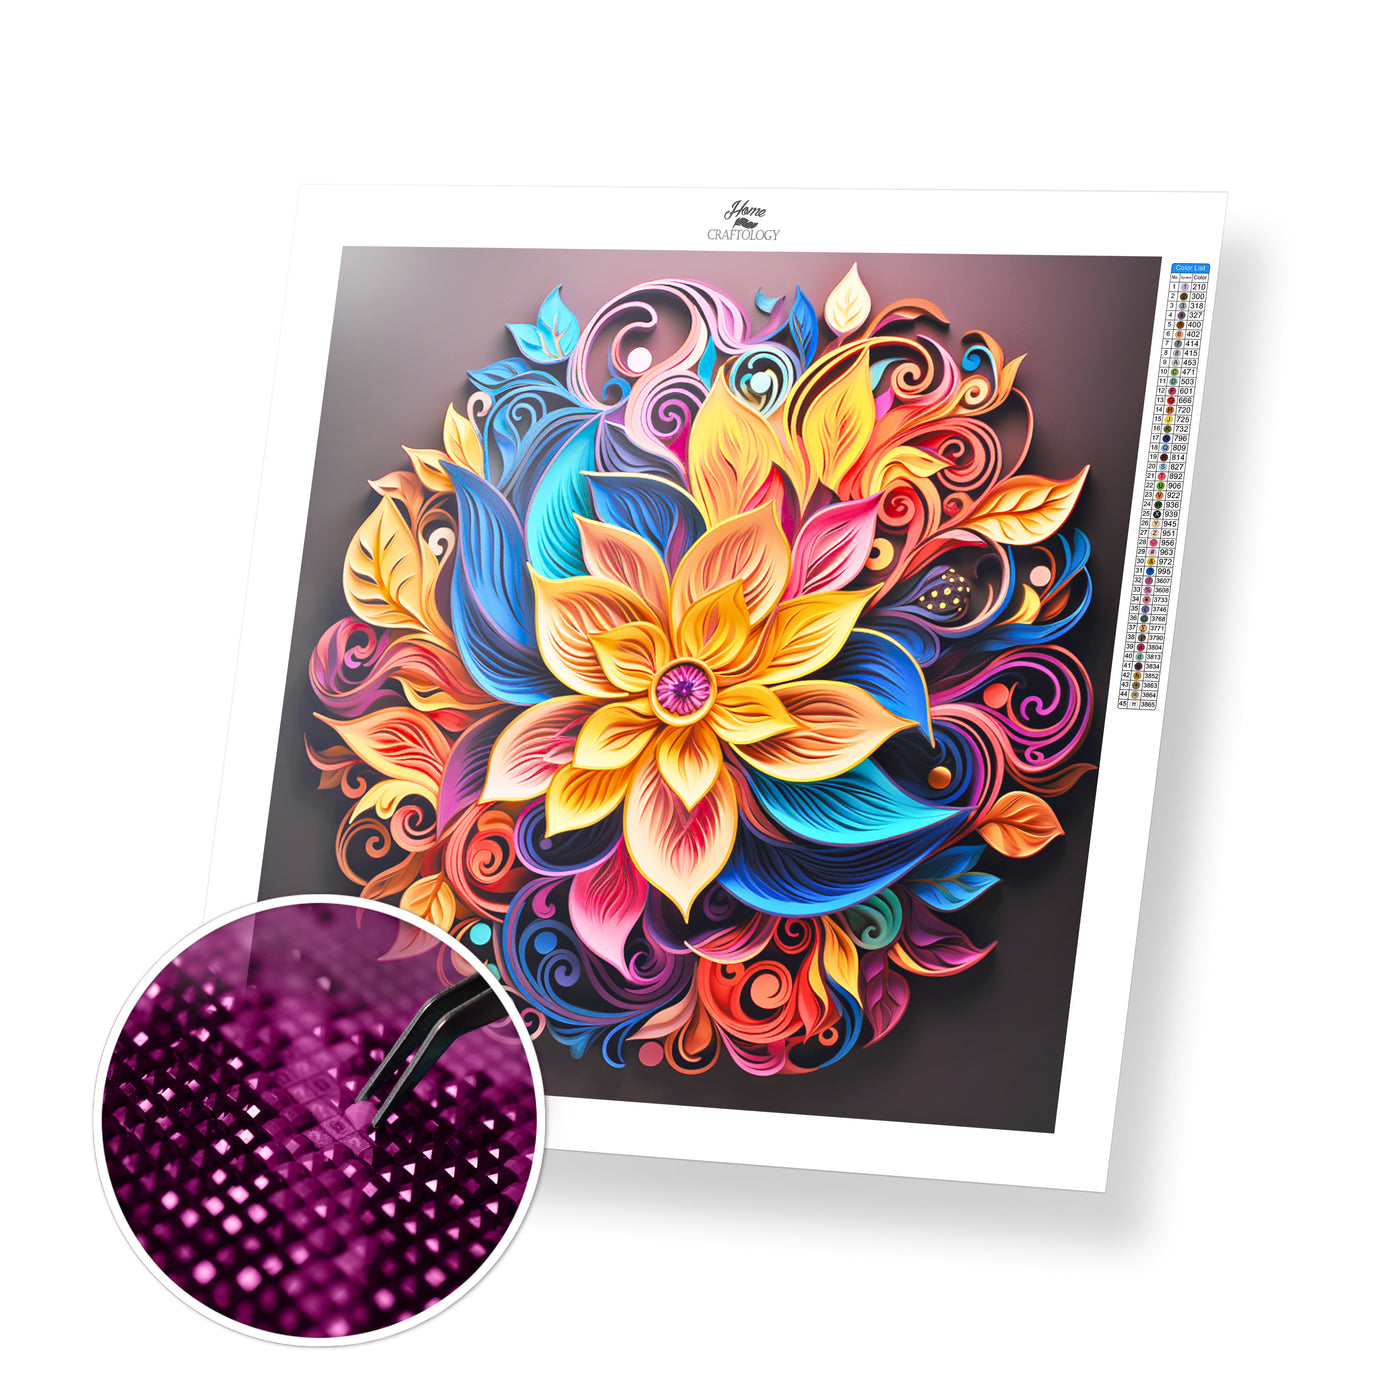 New! Swirls and Flowers - Premium Diamond Painting Kit